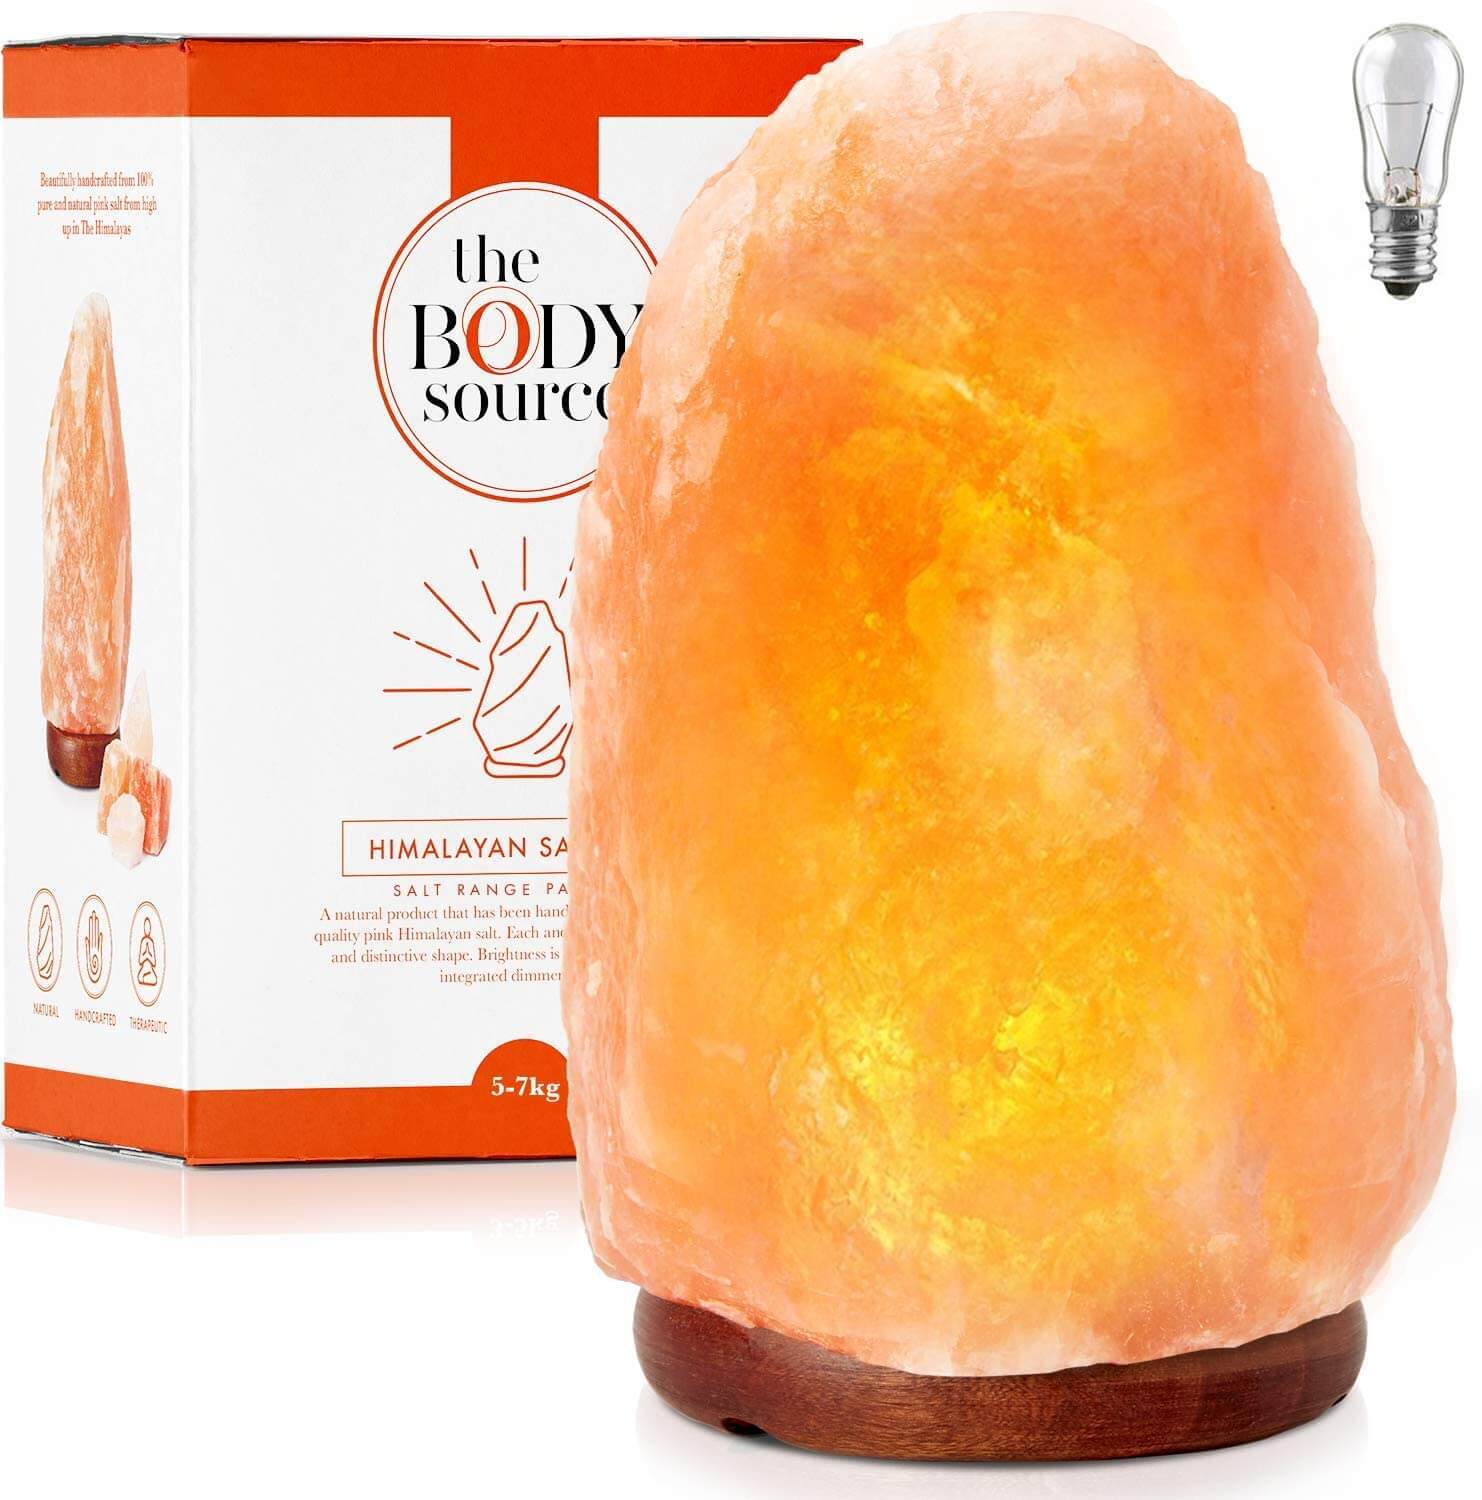 Lampe en cristal de sel de l’Himalaya Lampe Bosalla Lampe de chevet d’env 2156-a 2 kg Sel du sud de l’Himalaya